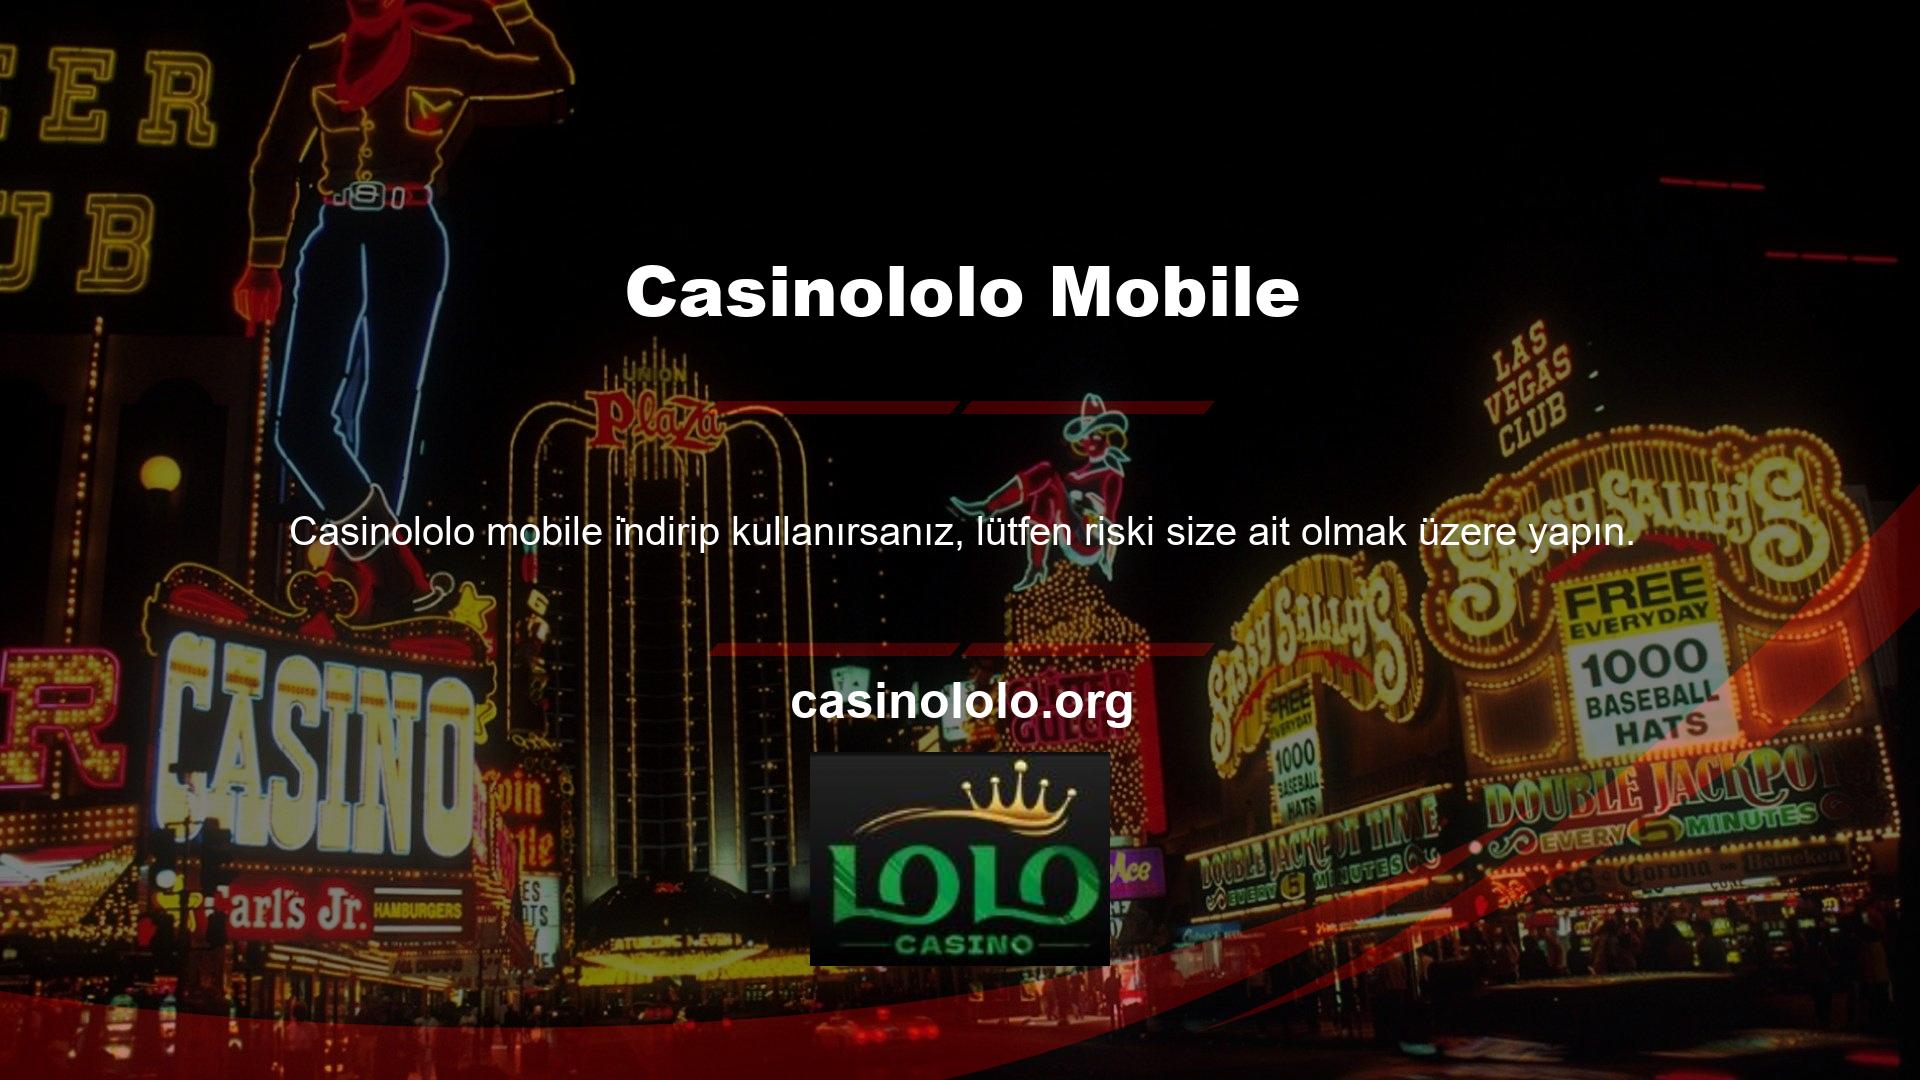 Gelecekte herhangi bir başvuru açıklanırsa, Casinololo Mobile'ı bu web sitesinde ilk tanıtan biz olacağımızdan emin olabilirsiniz